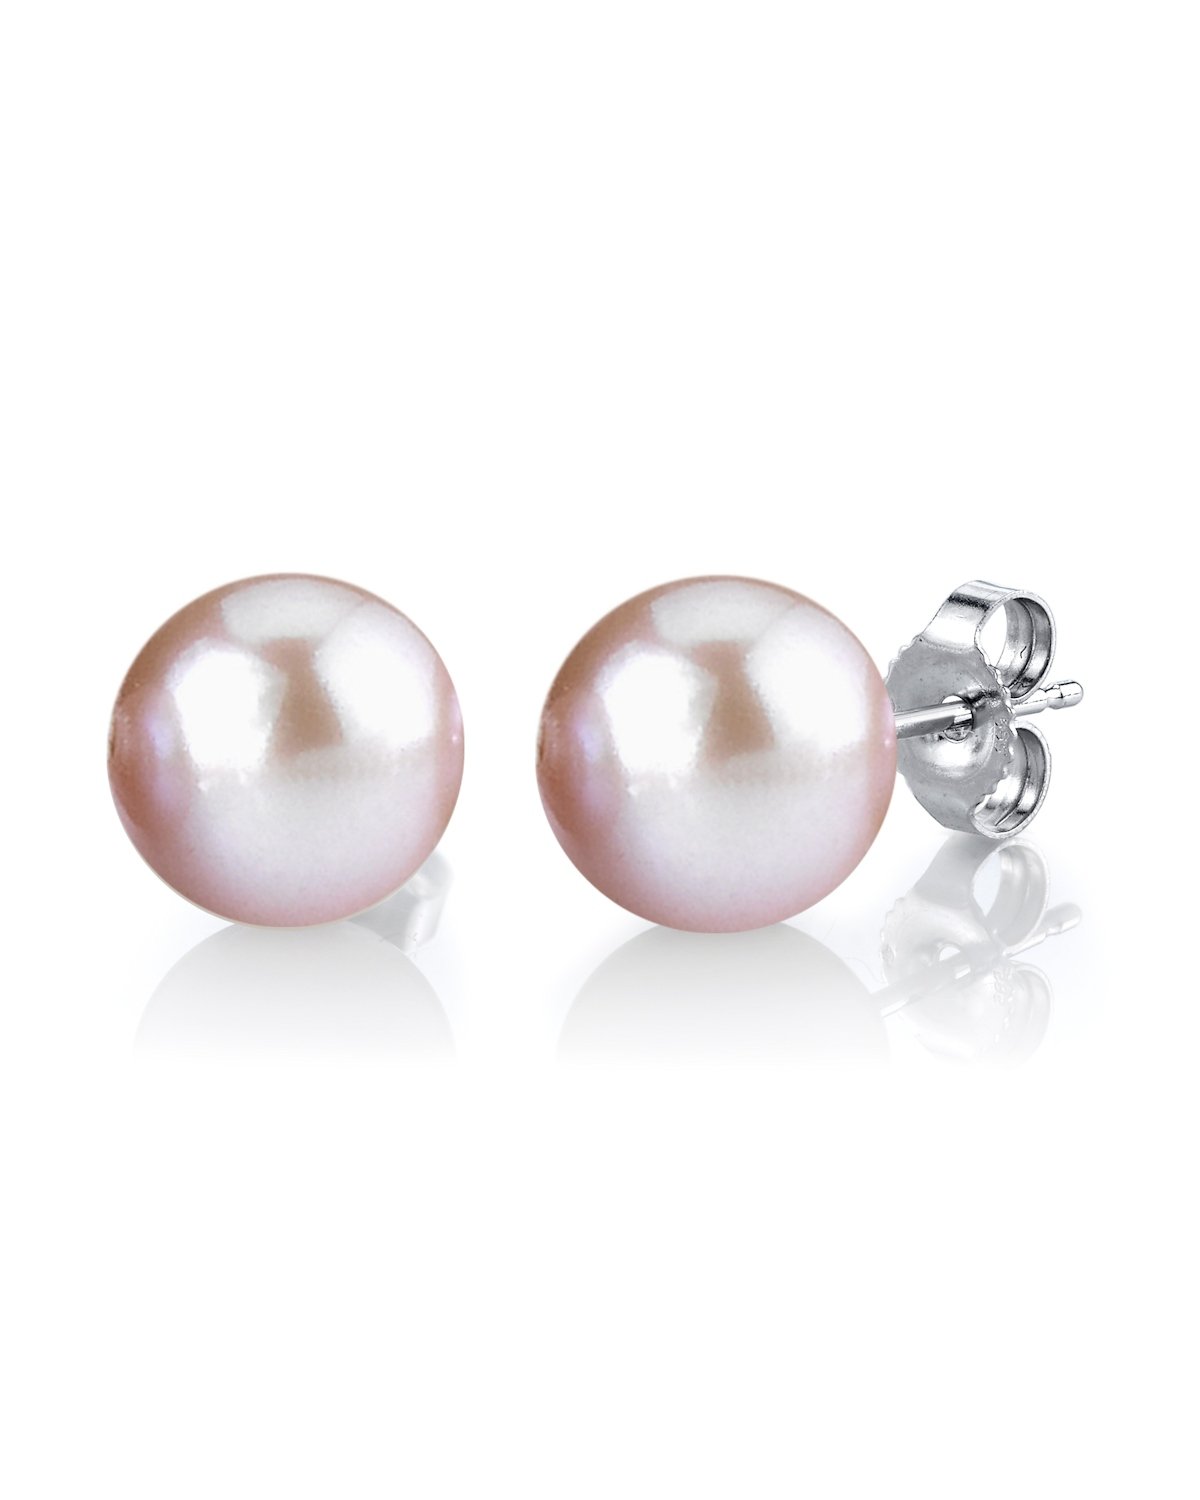 7mm Pink Freshwater Round Pearl Stud Earrings